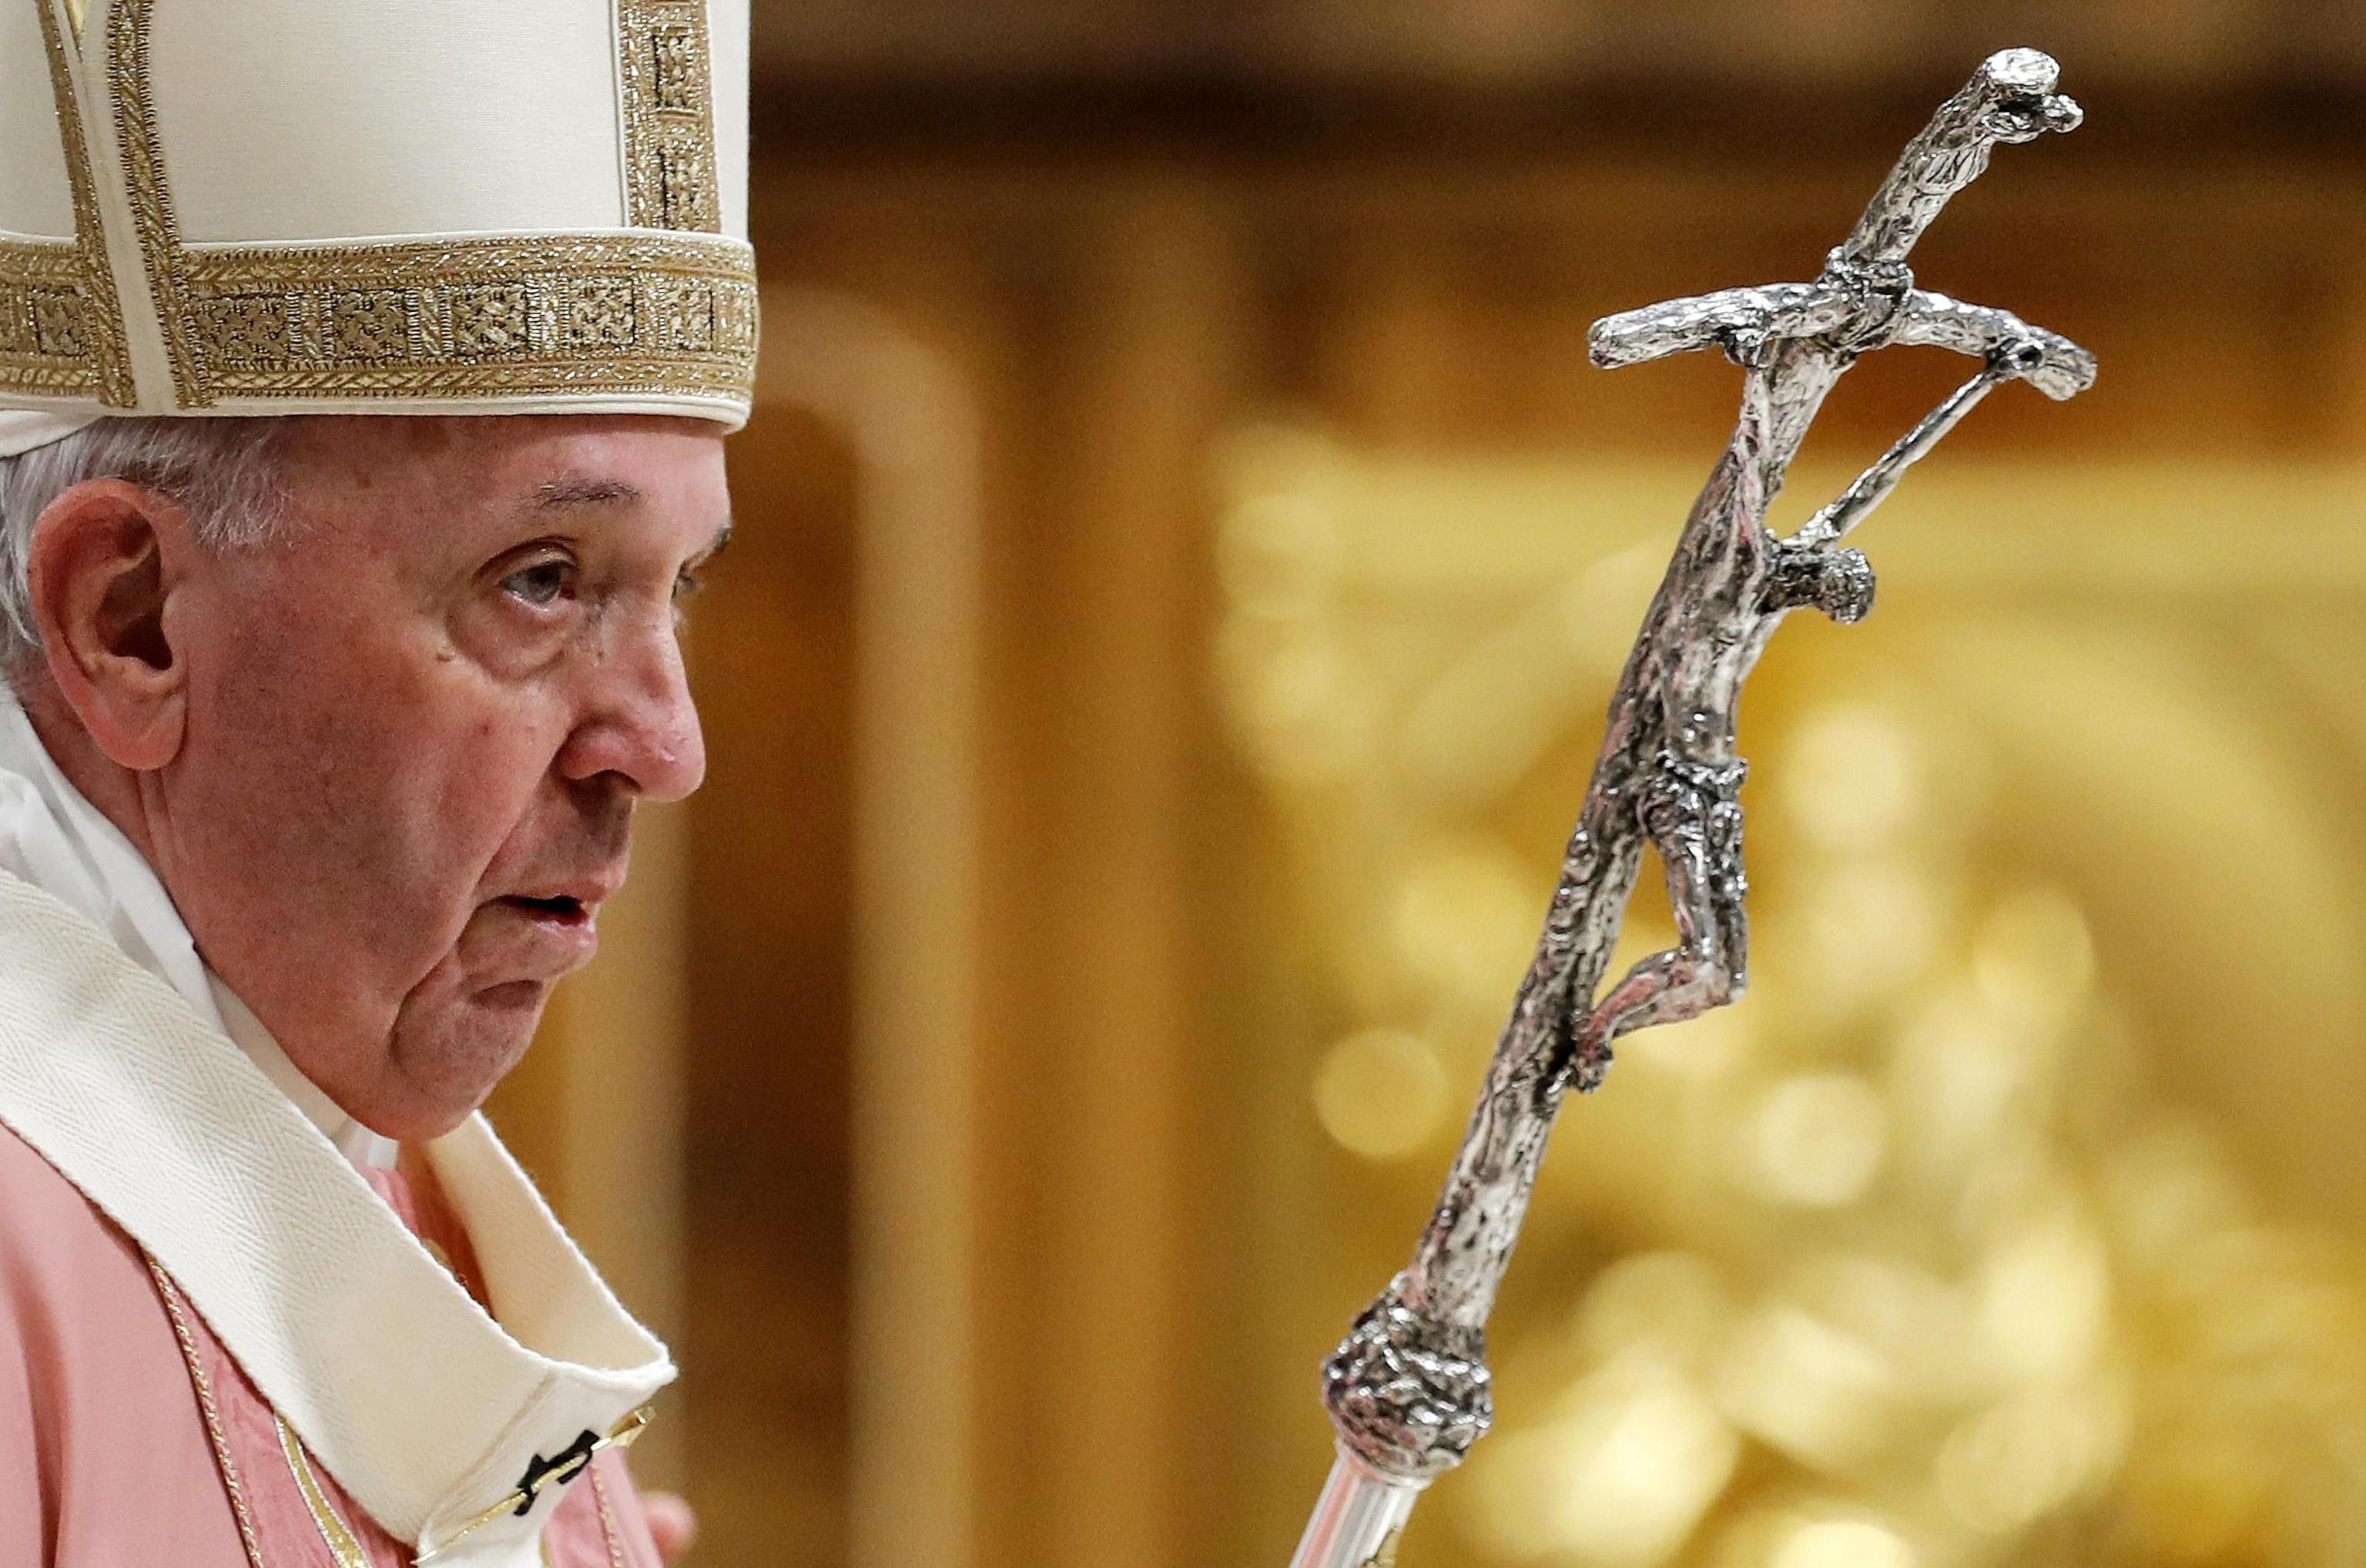 El papa Francisco hace un llamado a reducir las tensiones de guerra. (Foto Prensa Libre: EFE)